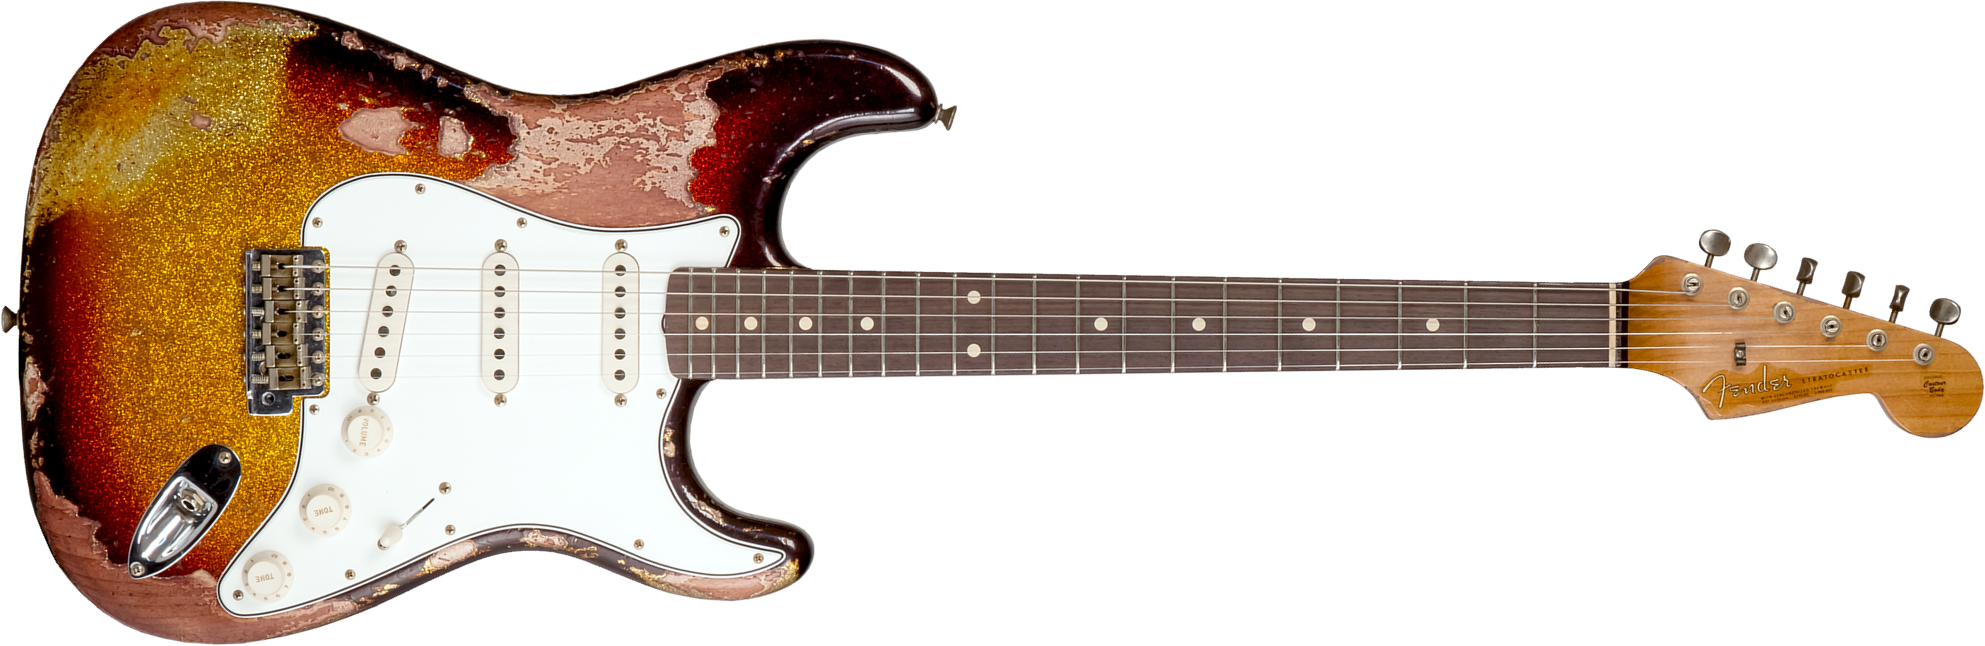 Fender Custom Shop Strat 1963 3s Trem Rw #r136169 - Super Heavy Relic Sparkle 3-color Sunburst - Guitarra eléctrica con forma de str. - Main picture